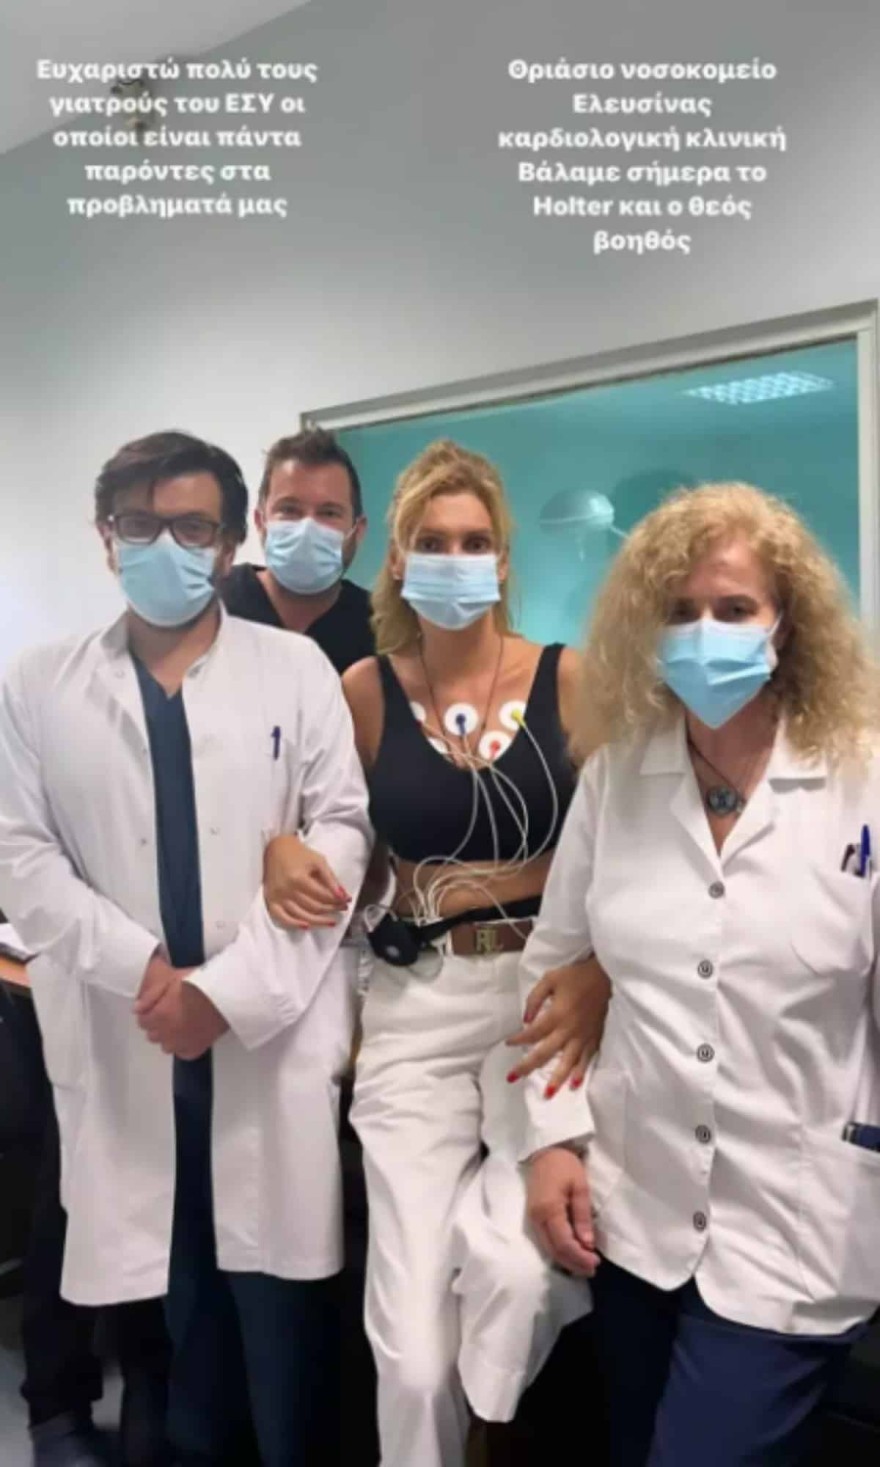 Η φωτογραφία της Σάσας Σταμάτη μέσα από το νοσοκομείο